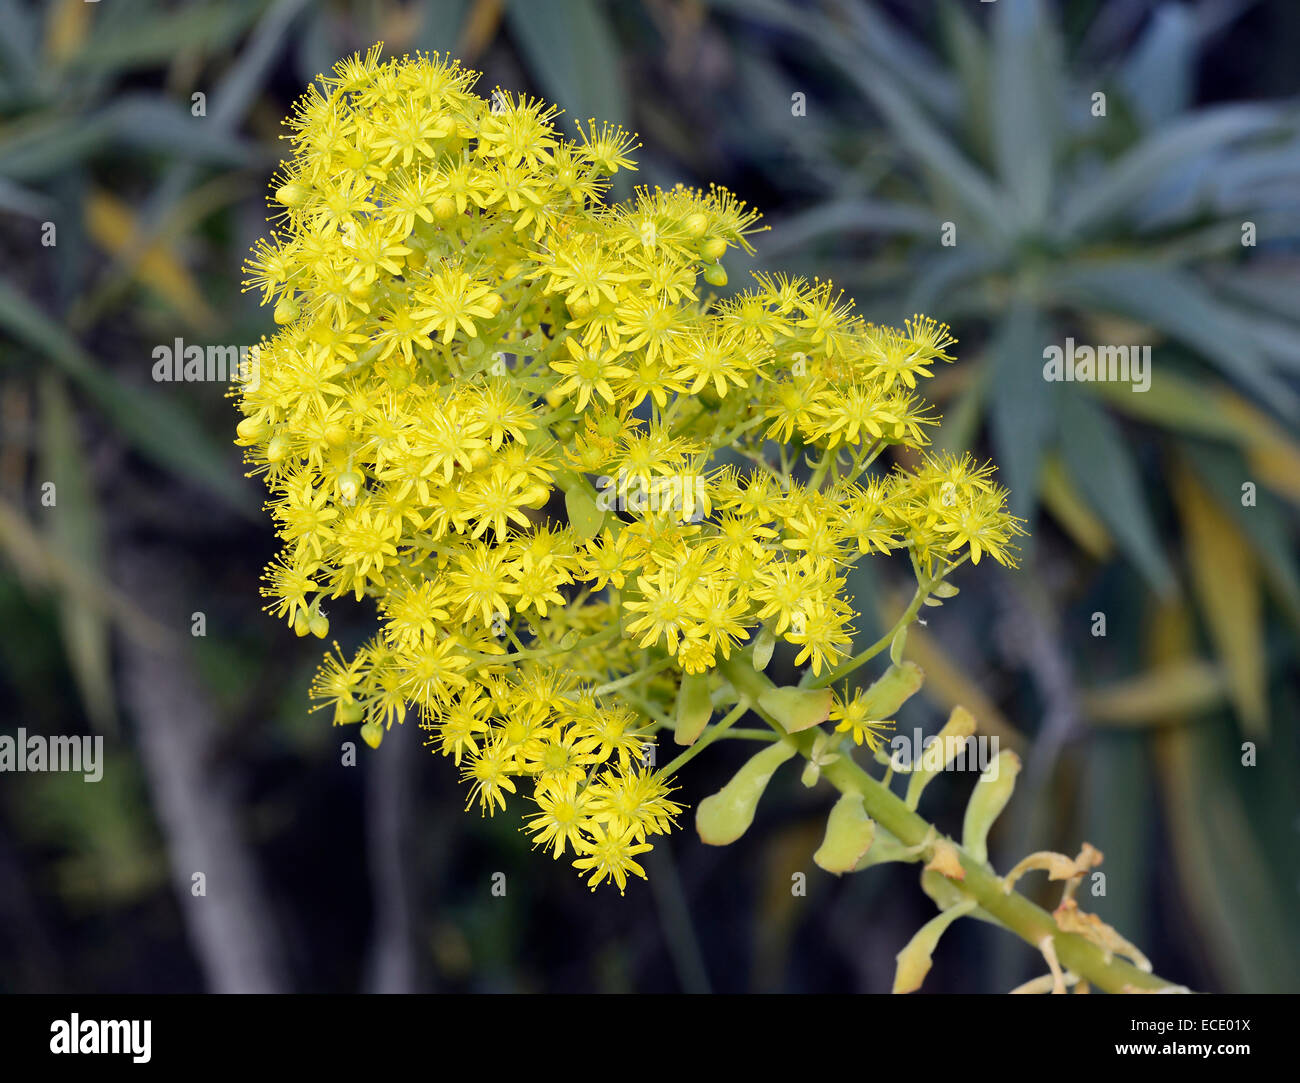 Tree aeonium aeonium arboreum hi-res stock photography and images - Alamy